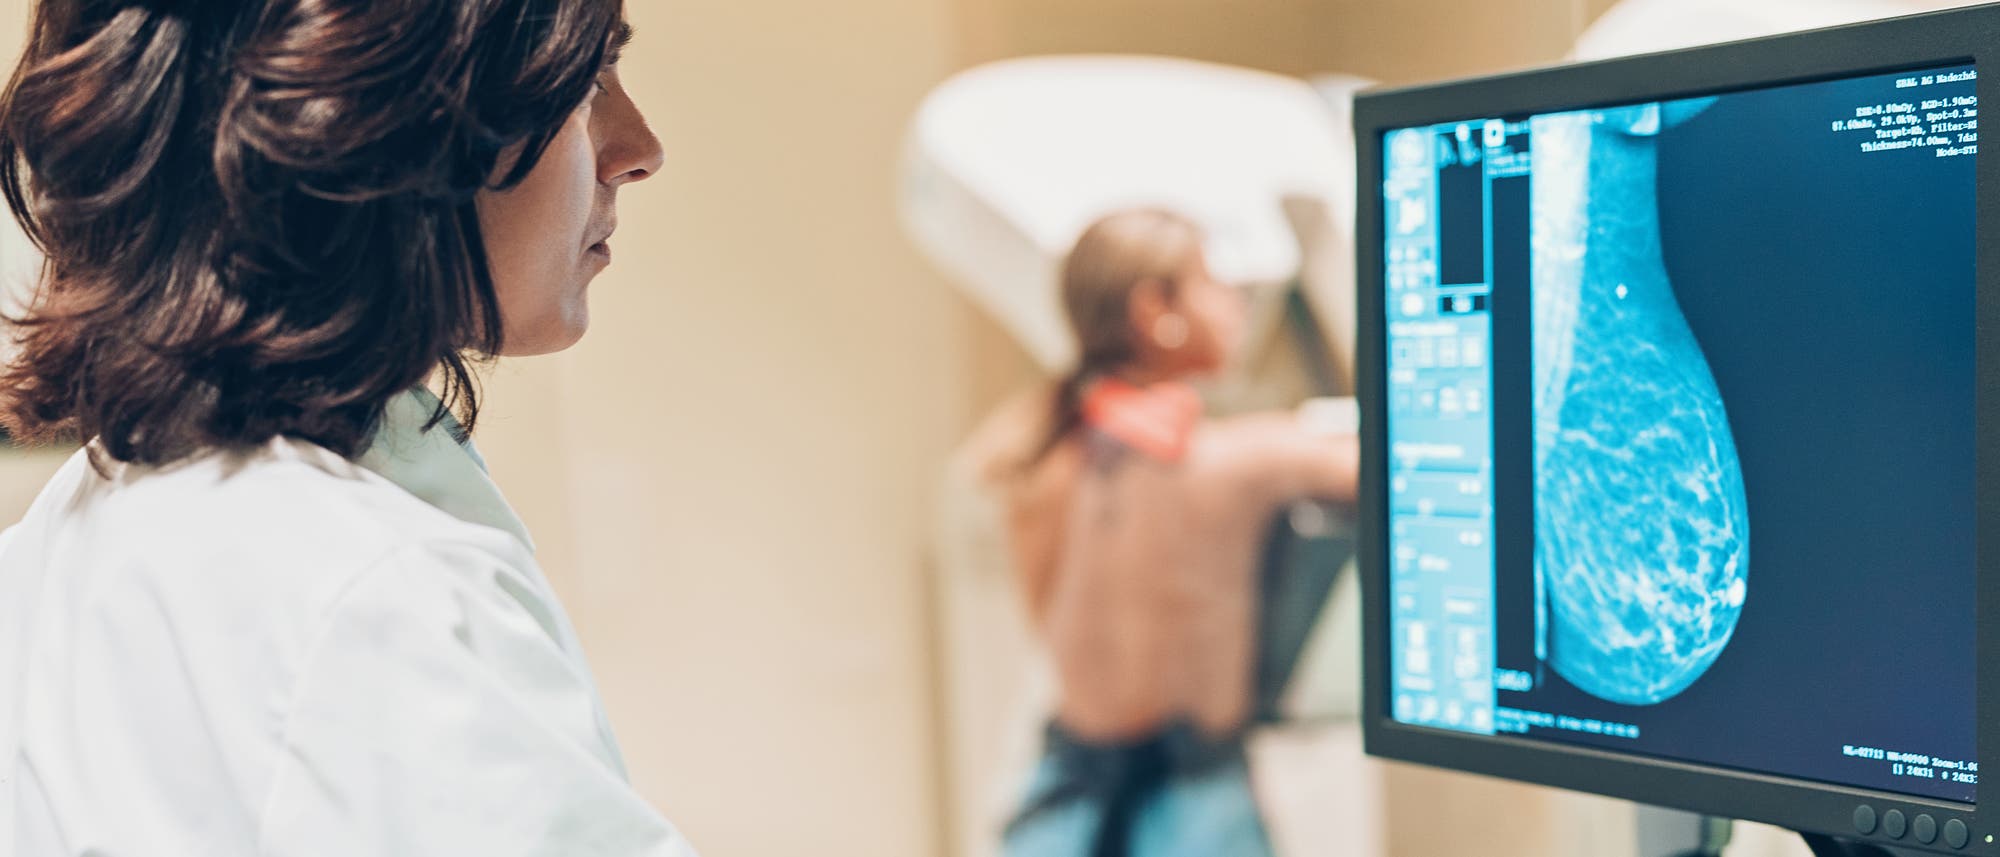 Seit einigen Jahren gibt es in Deutschland ein gesetzliches Früherkennungsprogramm, das Mammografie-Screening für Frauen zwischen 50 und 69 Jahren.